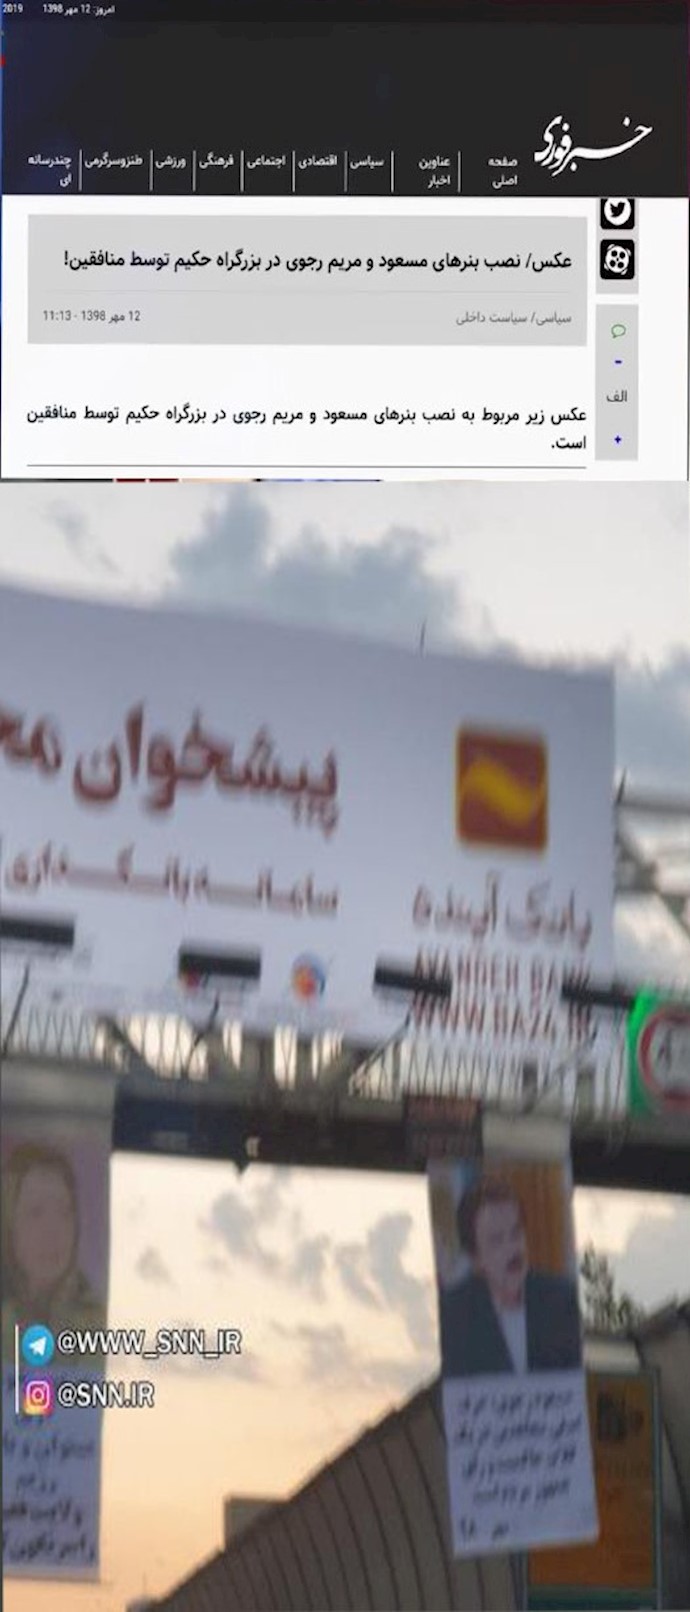 موقع ”خبر فوري“ الحكومي تعليق لافتات لصور مسعود و مریم رجوي في طريق حکیم السريع من قبل المنافقین!